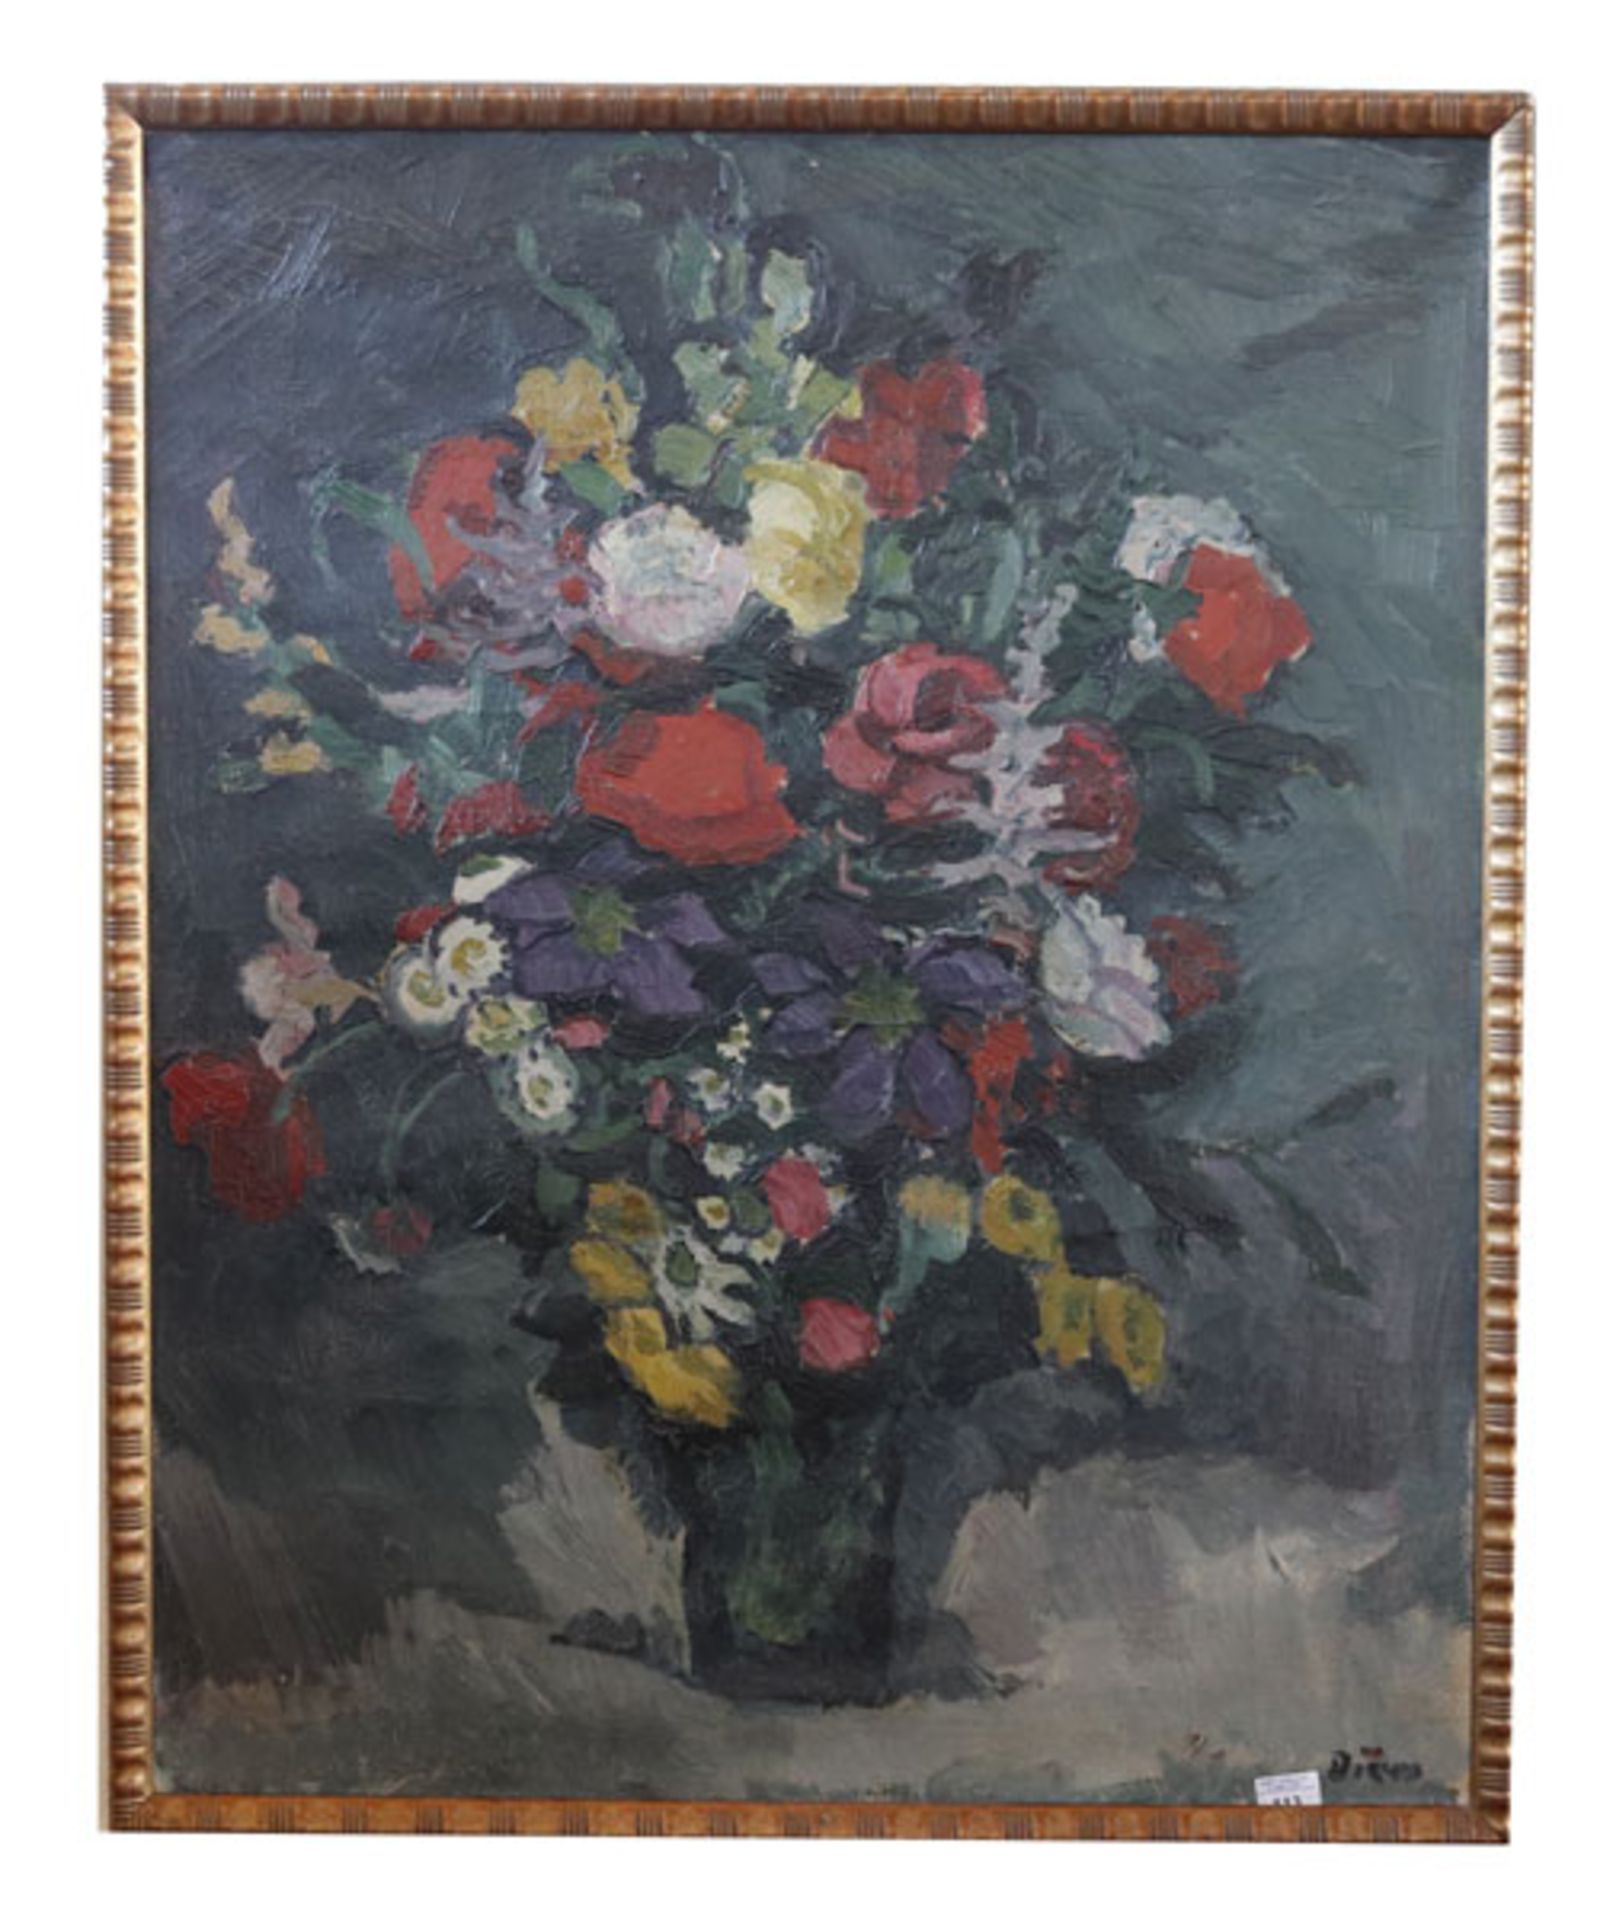 Gemälde ÖL/LW 'Blumenstillleben in Vase', signiert Diem, Peter Karl, * 1890 Stuttgart + 1956